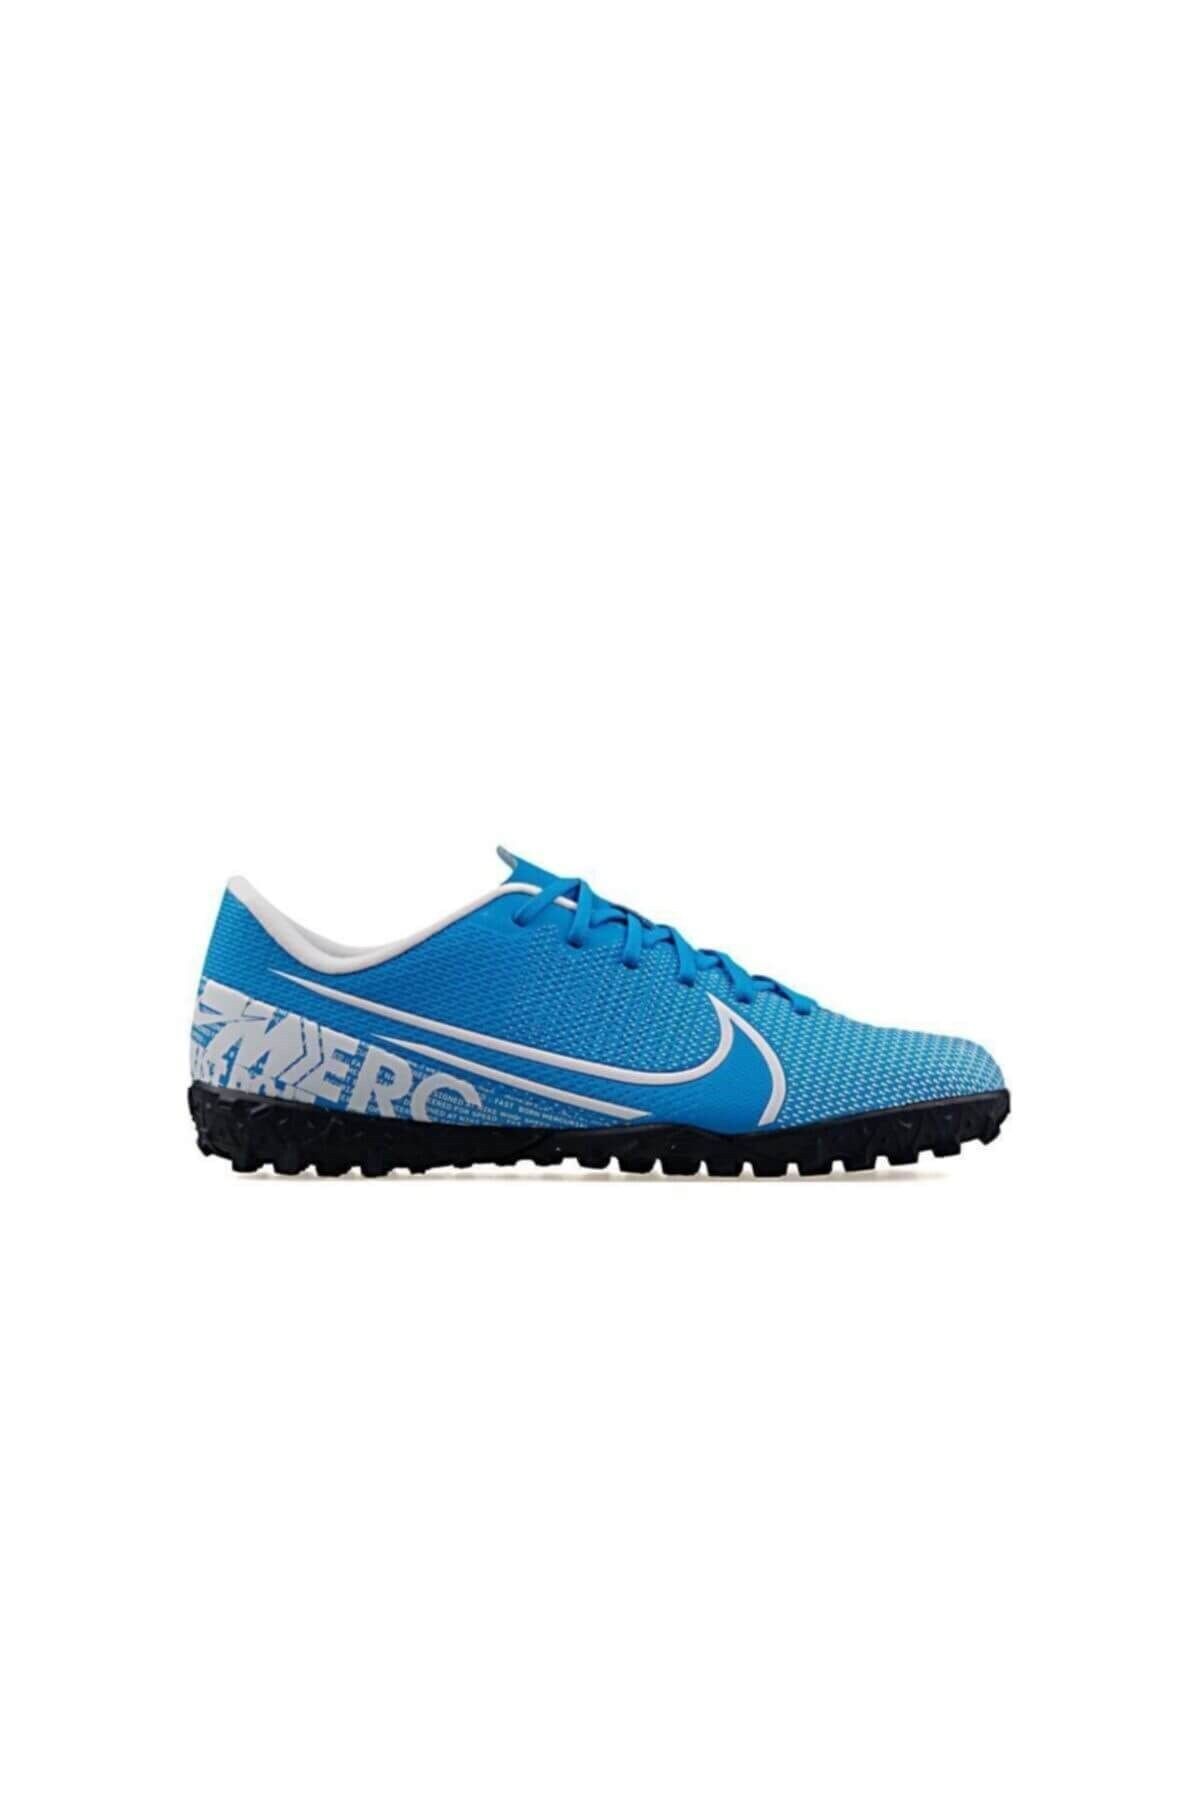 Nike Vapor 13 Academy Çocuk Halı Saha Ayakkabı At8145-414-mavı